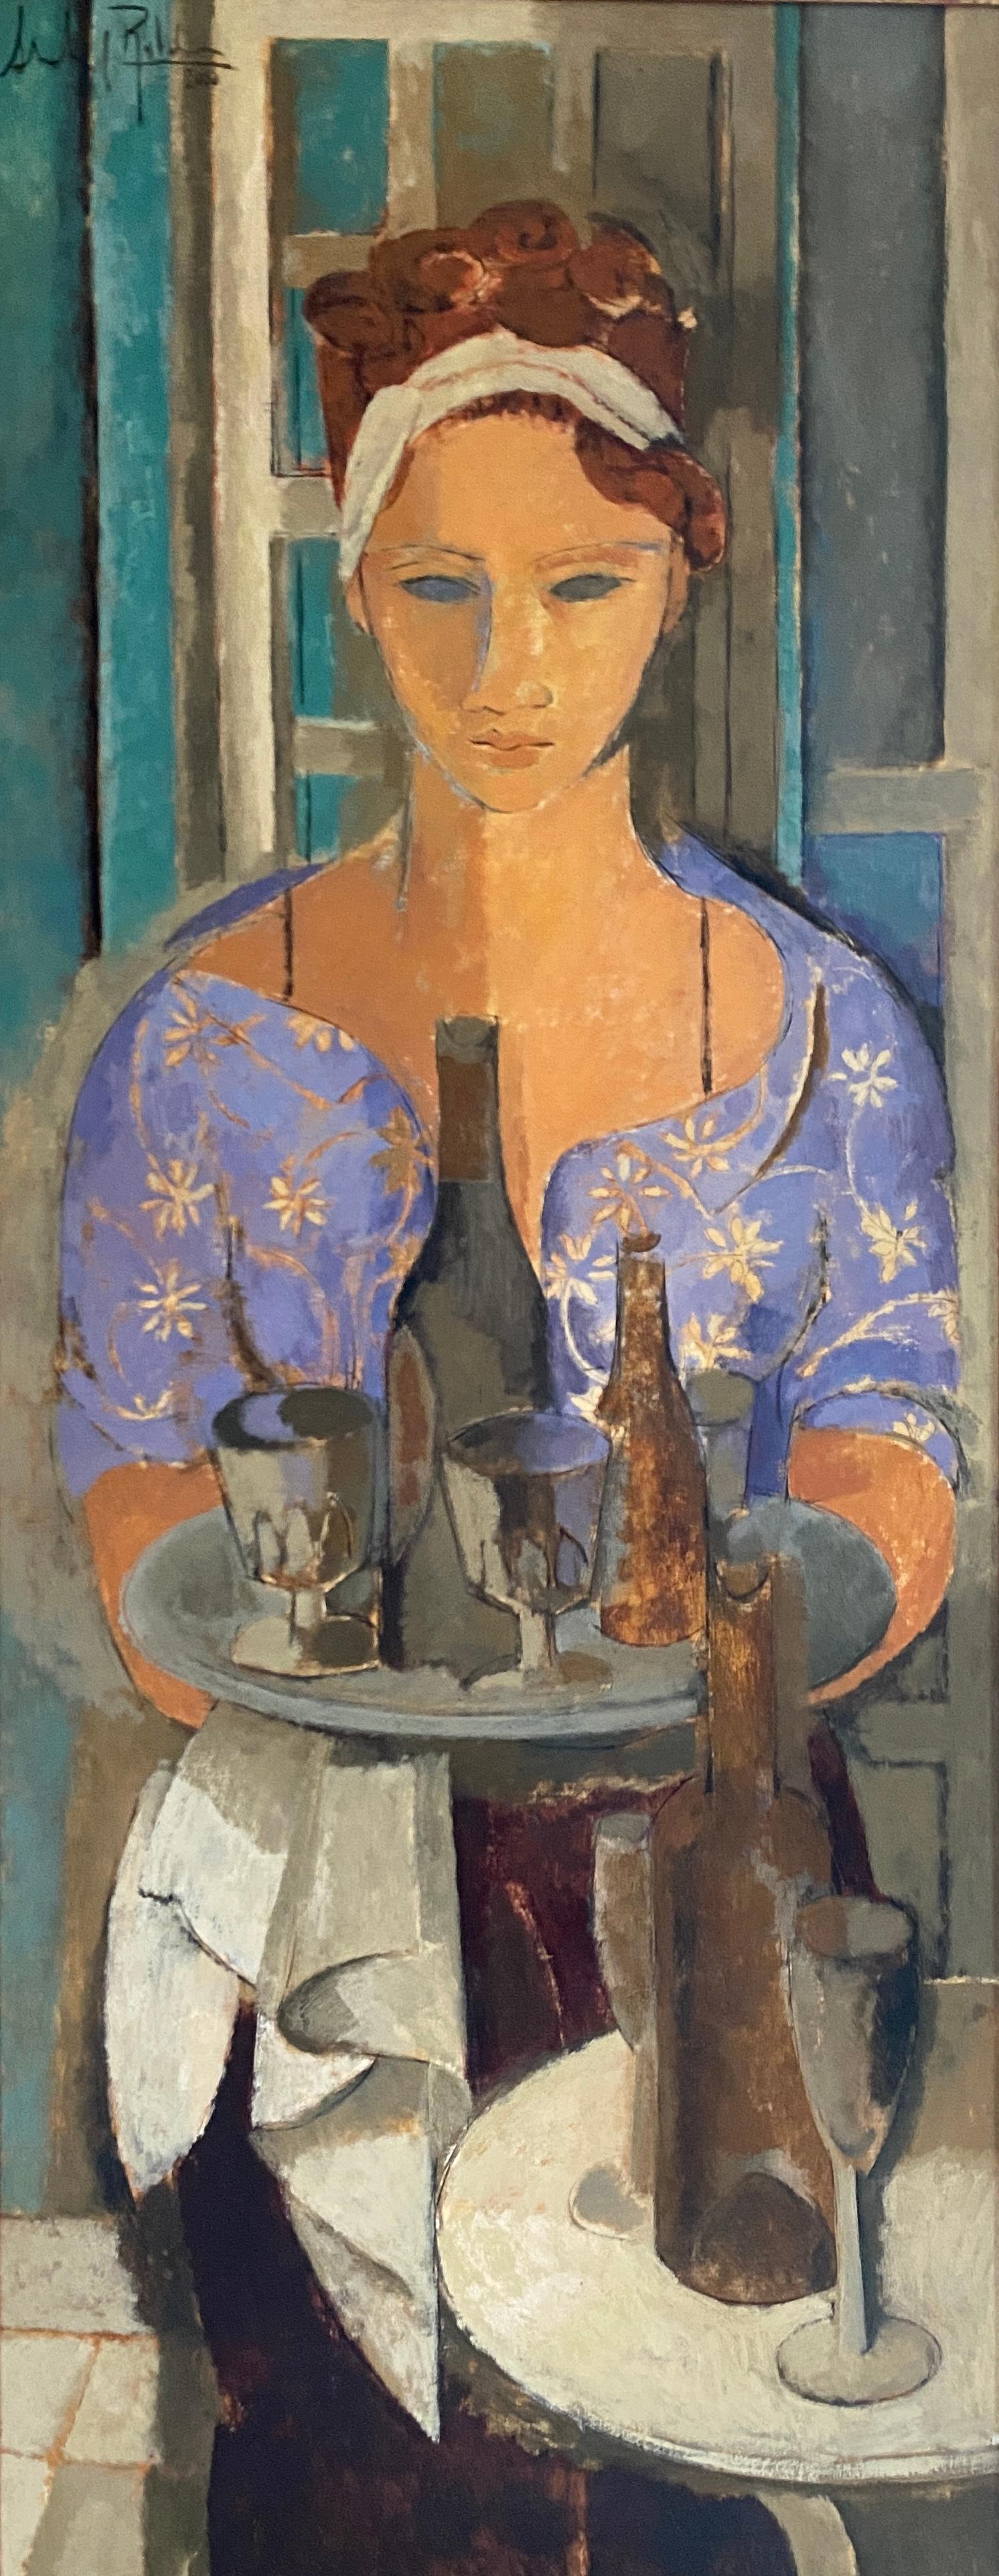 The waitress. Three quarter portrait.  Contemporary Cubist style. Oil paint